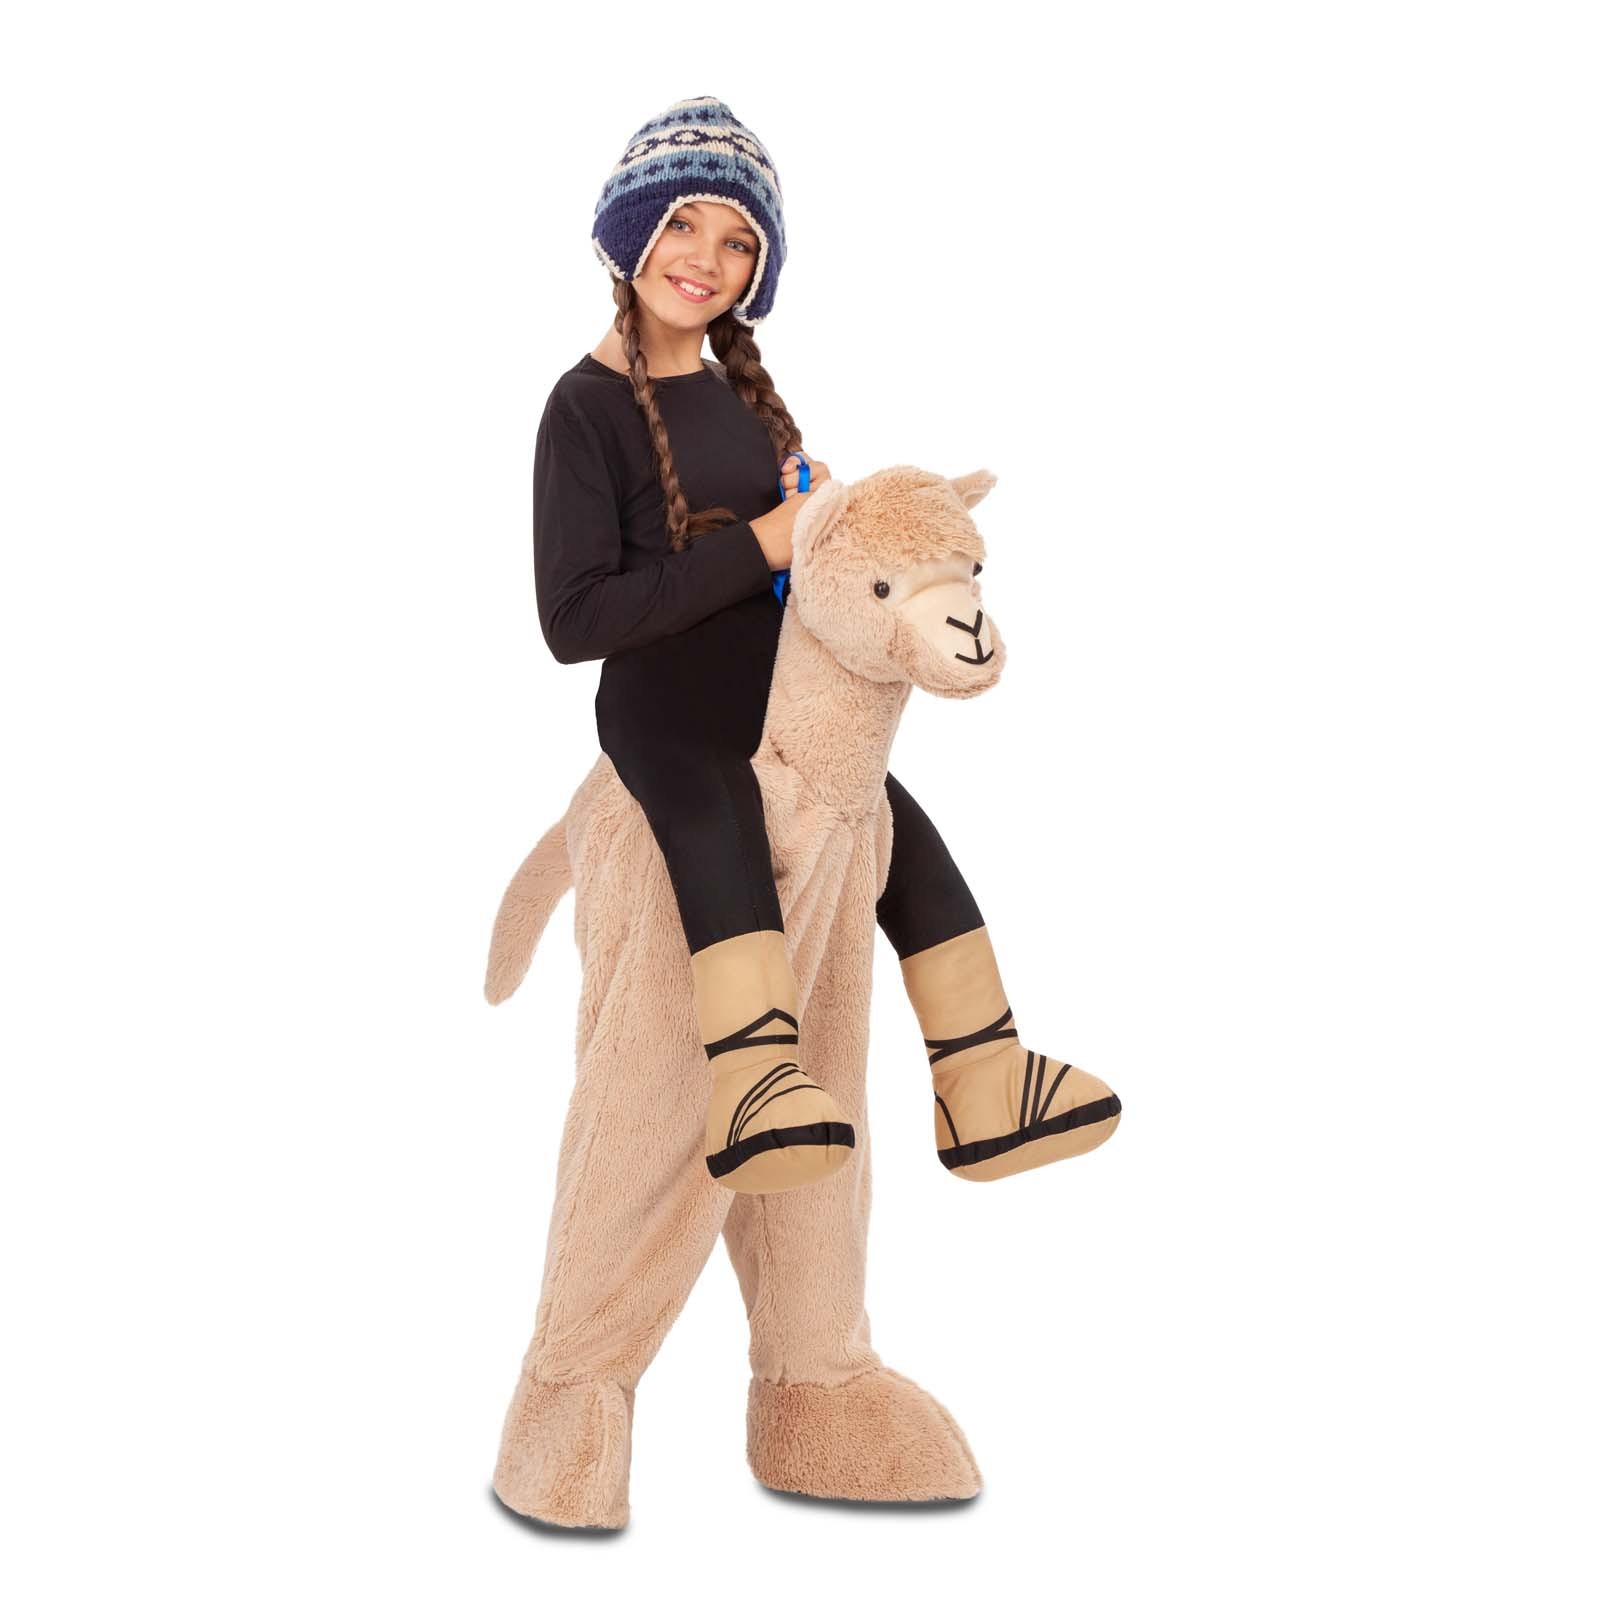 Complejo Tender emergencia Disfraz a Hombros Alpaca para Niños